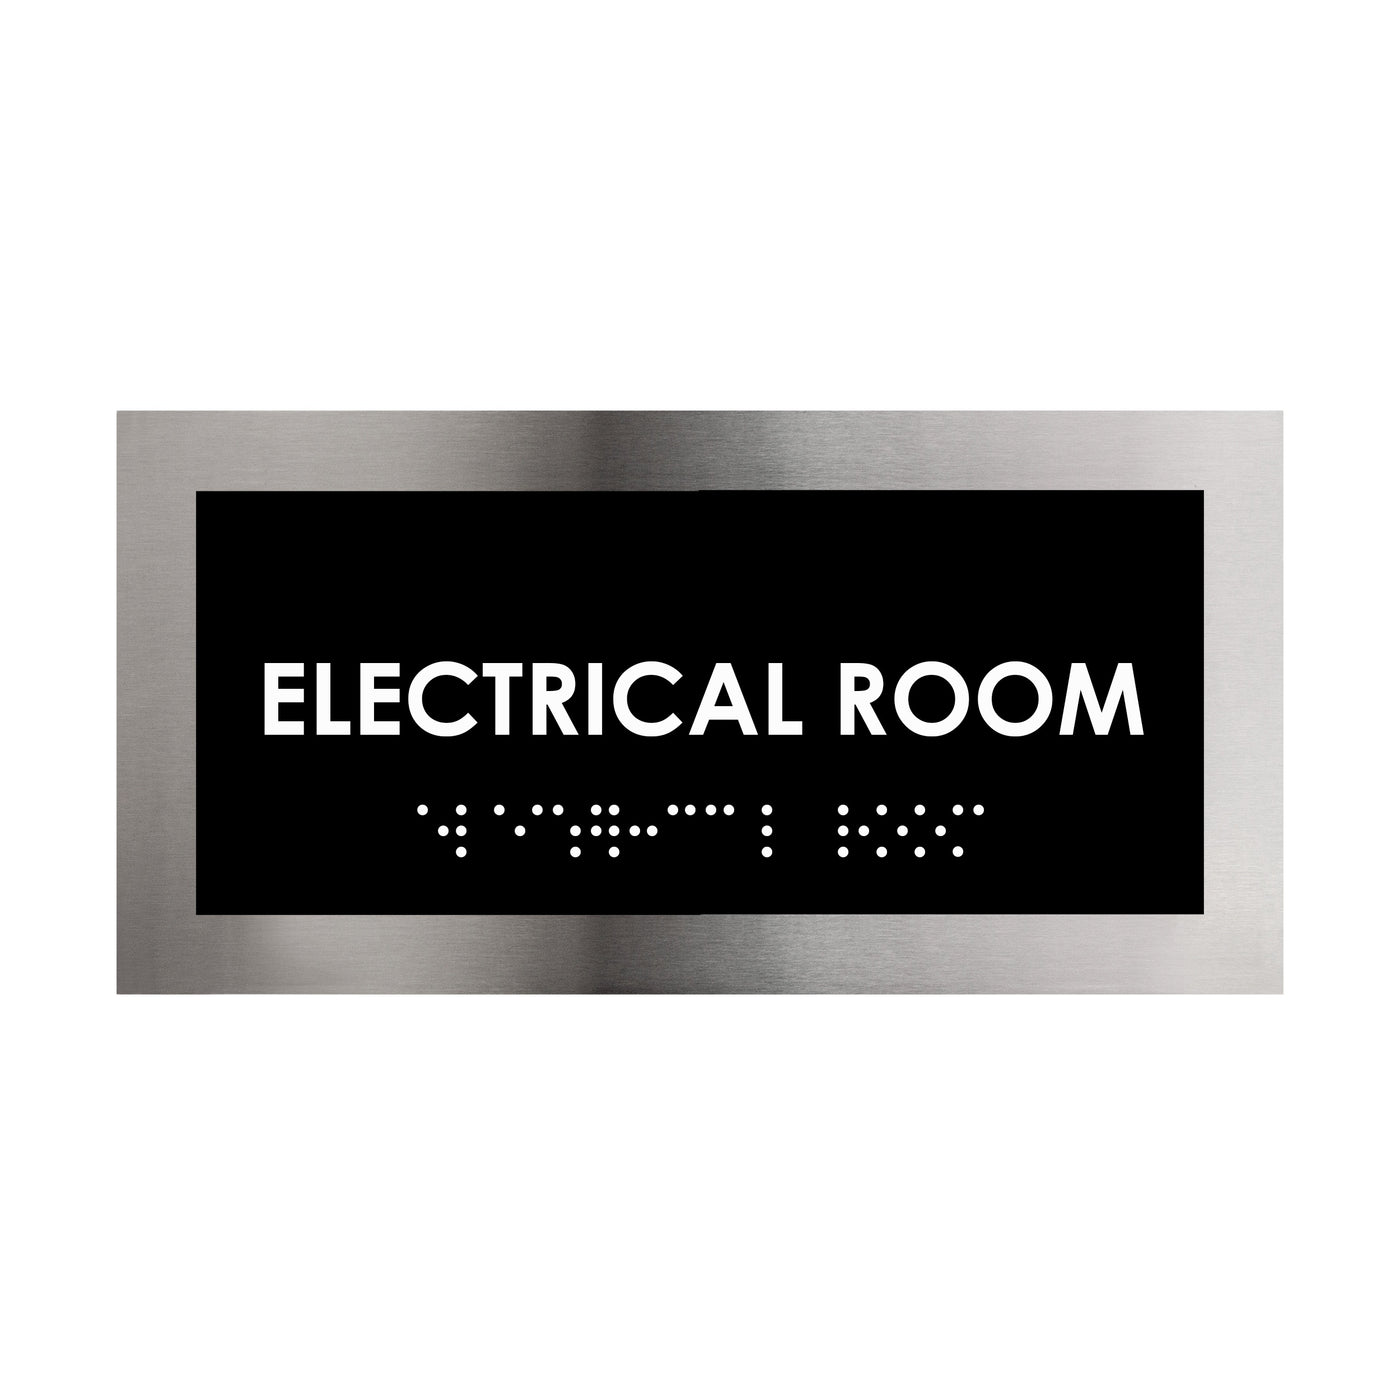 Door Signs - Electrical Room Door Plate - Stainless Steel Sign - "Modern" Design